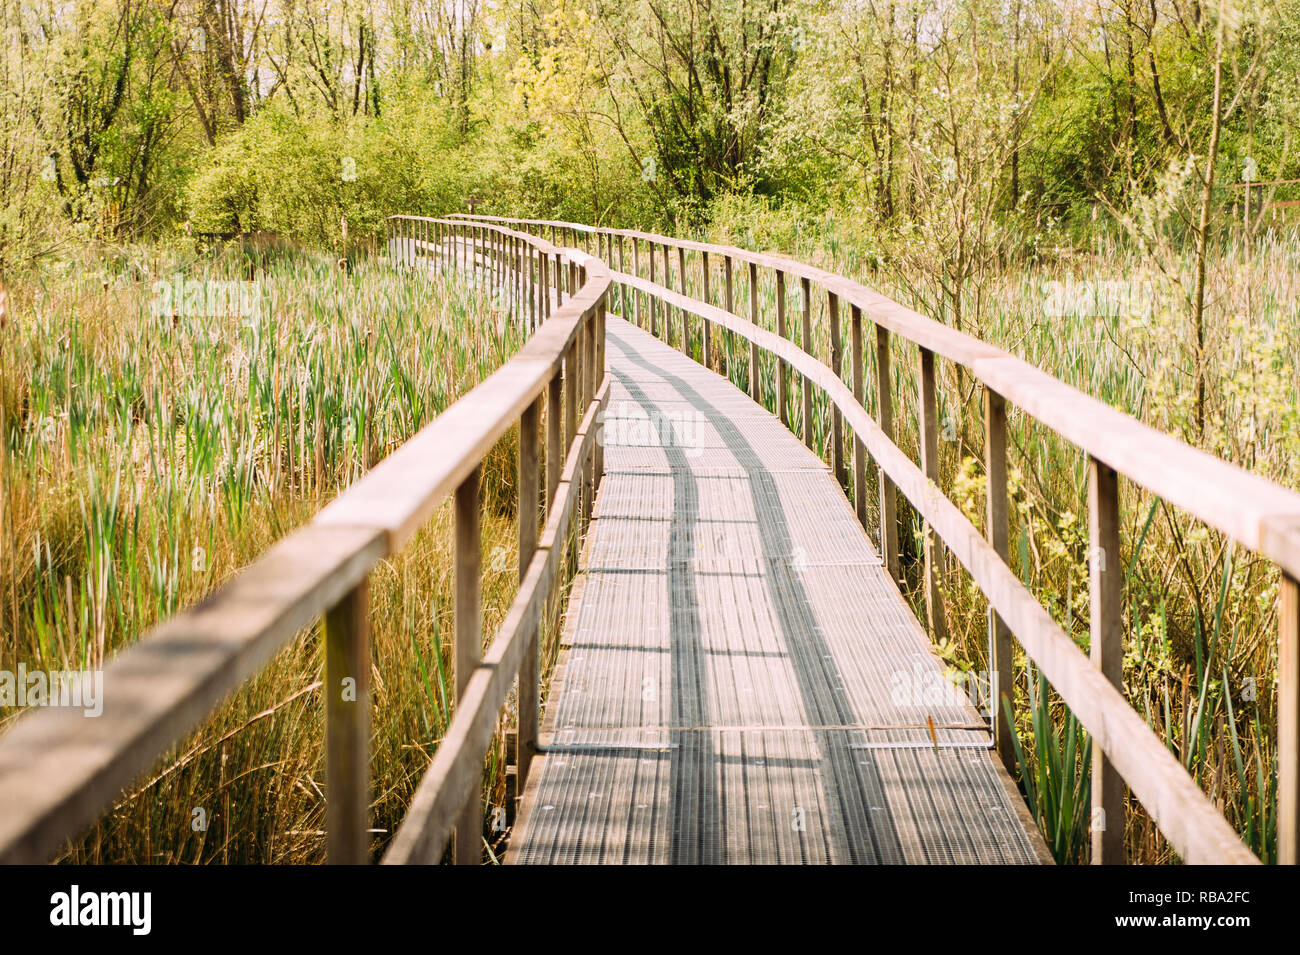 Il molo di legno in campagna a bassa marsh andando verso il bosco in outdoor, esprimendo la sensazione di serenità e di percorso futuro Foto Stock